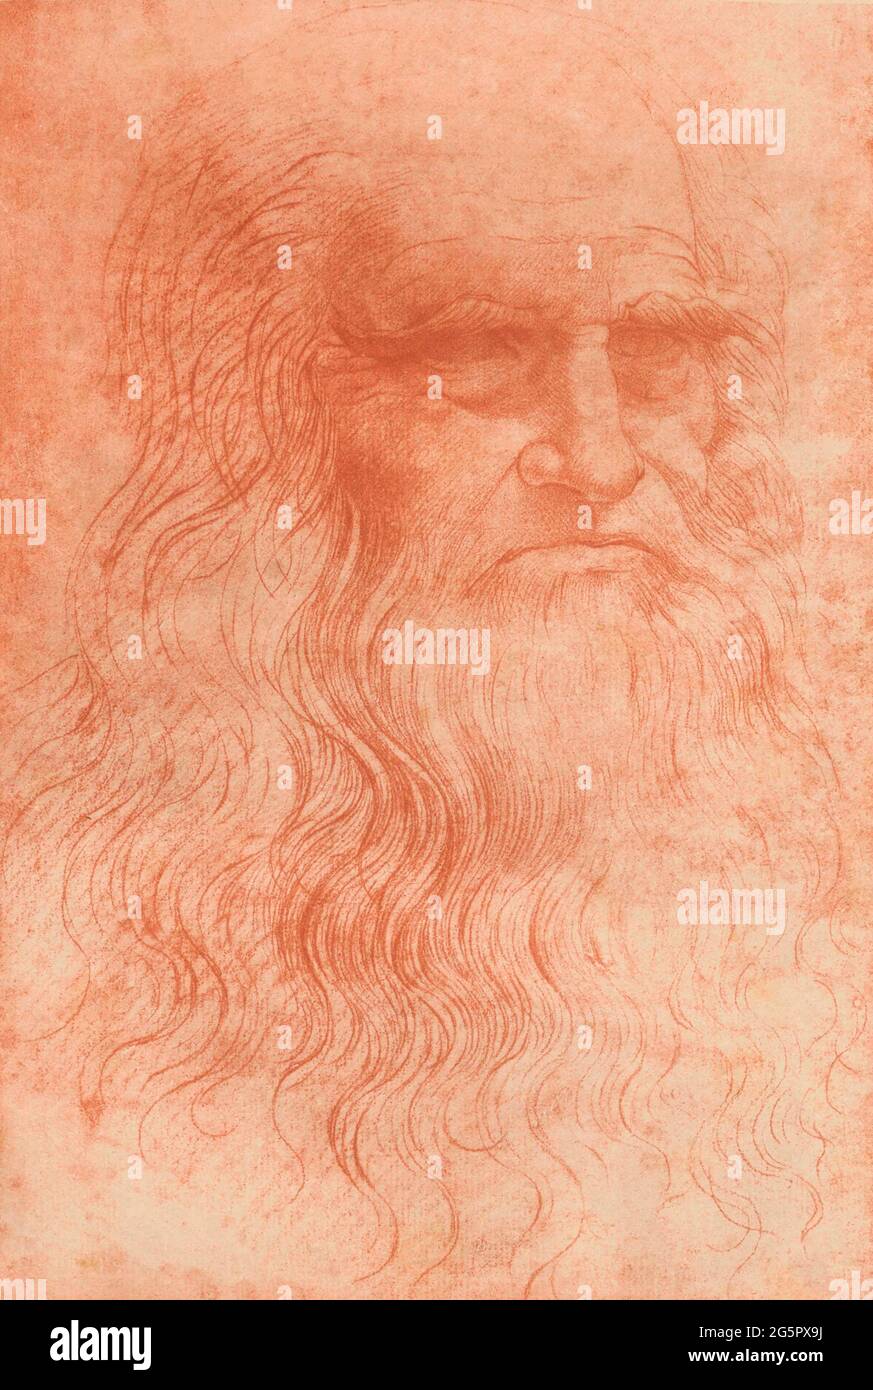 Porträt eines Mannes in der roten Kreide, nach einem Werk von Leonardo da Vinci. Es wird vermutet, dass das Bild ein Selbstporträt sein könnte. Nach einer Kopie des italienischen Fotografen Carlo Naya, 1816 - 1882. Stockfoto